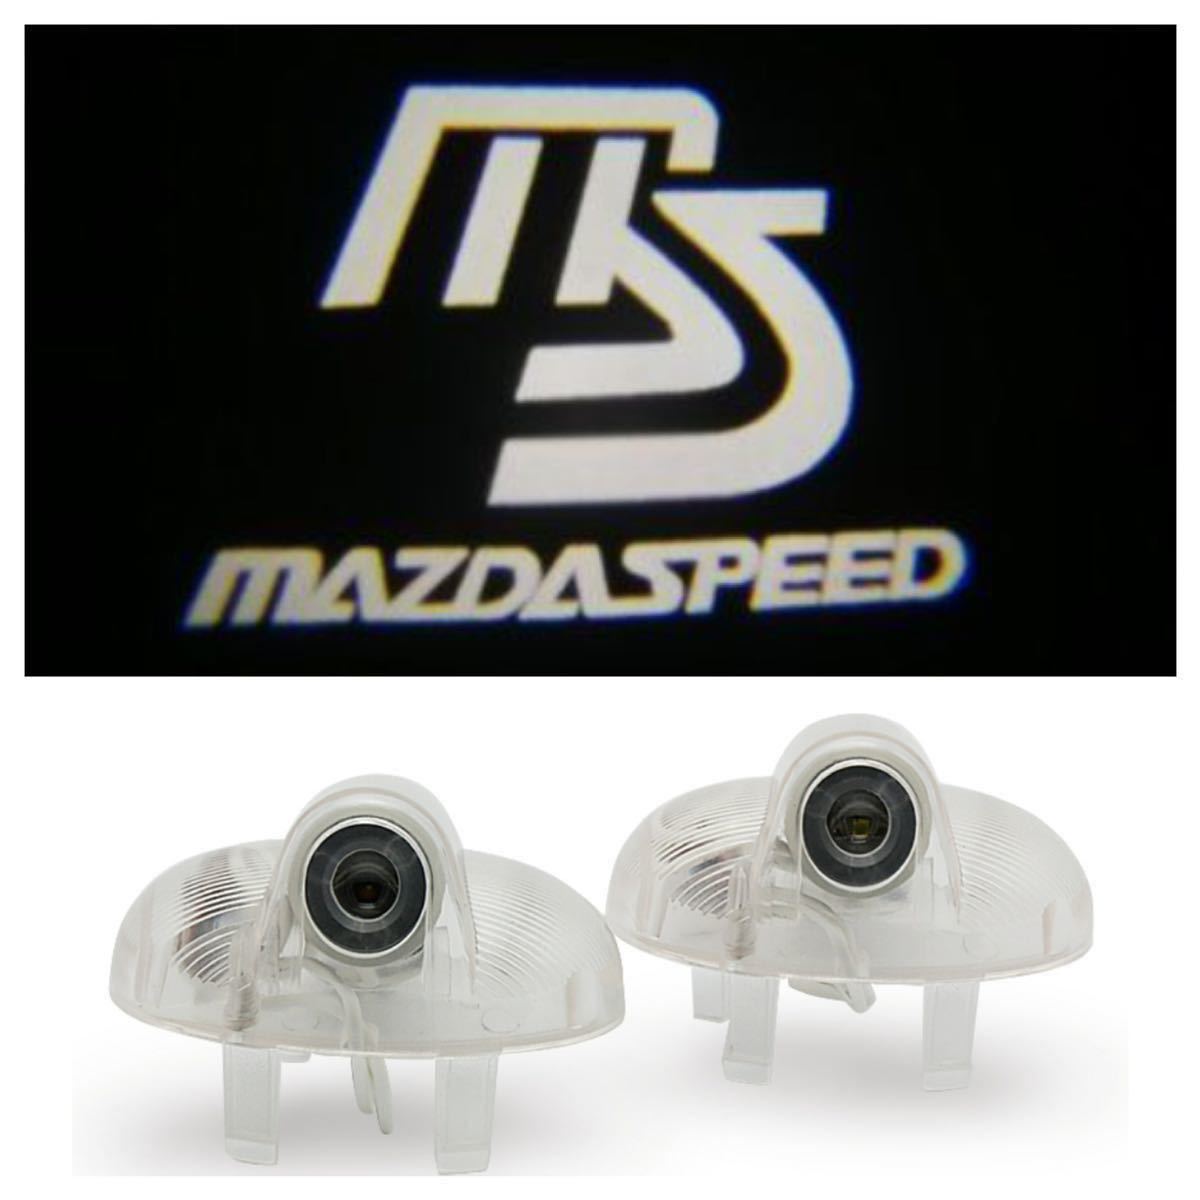 マツダ RX-8 ロゴ LED プロジェクター ドア カーテシ ランプ 純正交換タイプ マツダ スピード ロータリー MAZDA SPEED ライト エンブレム_画像2